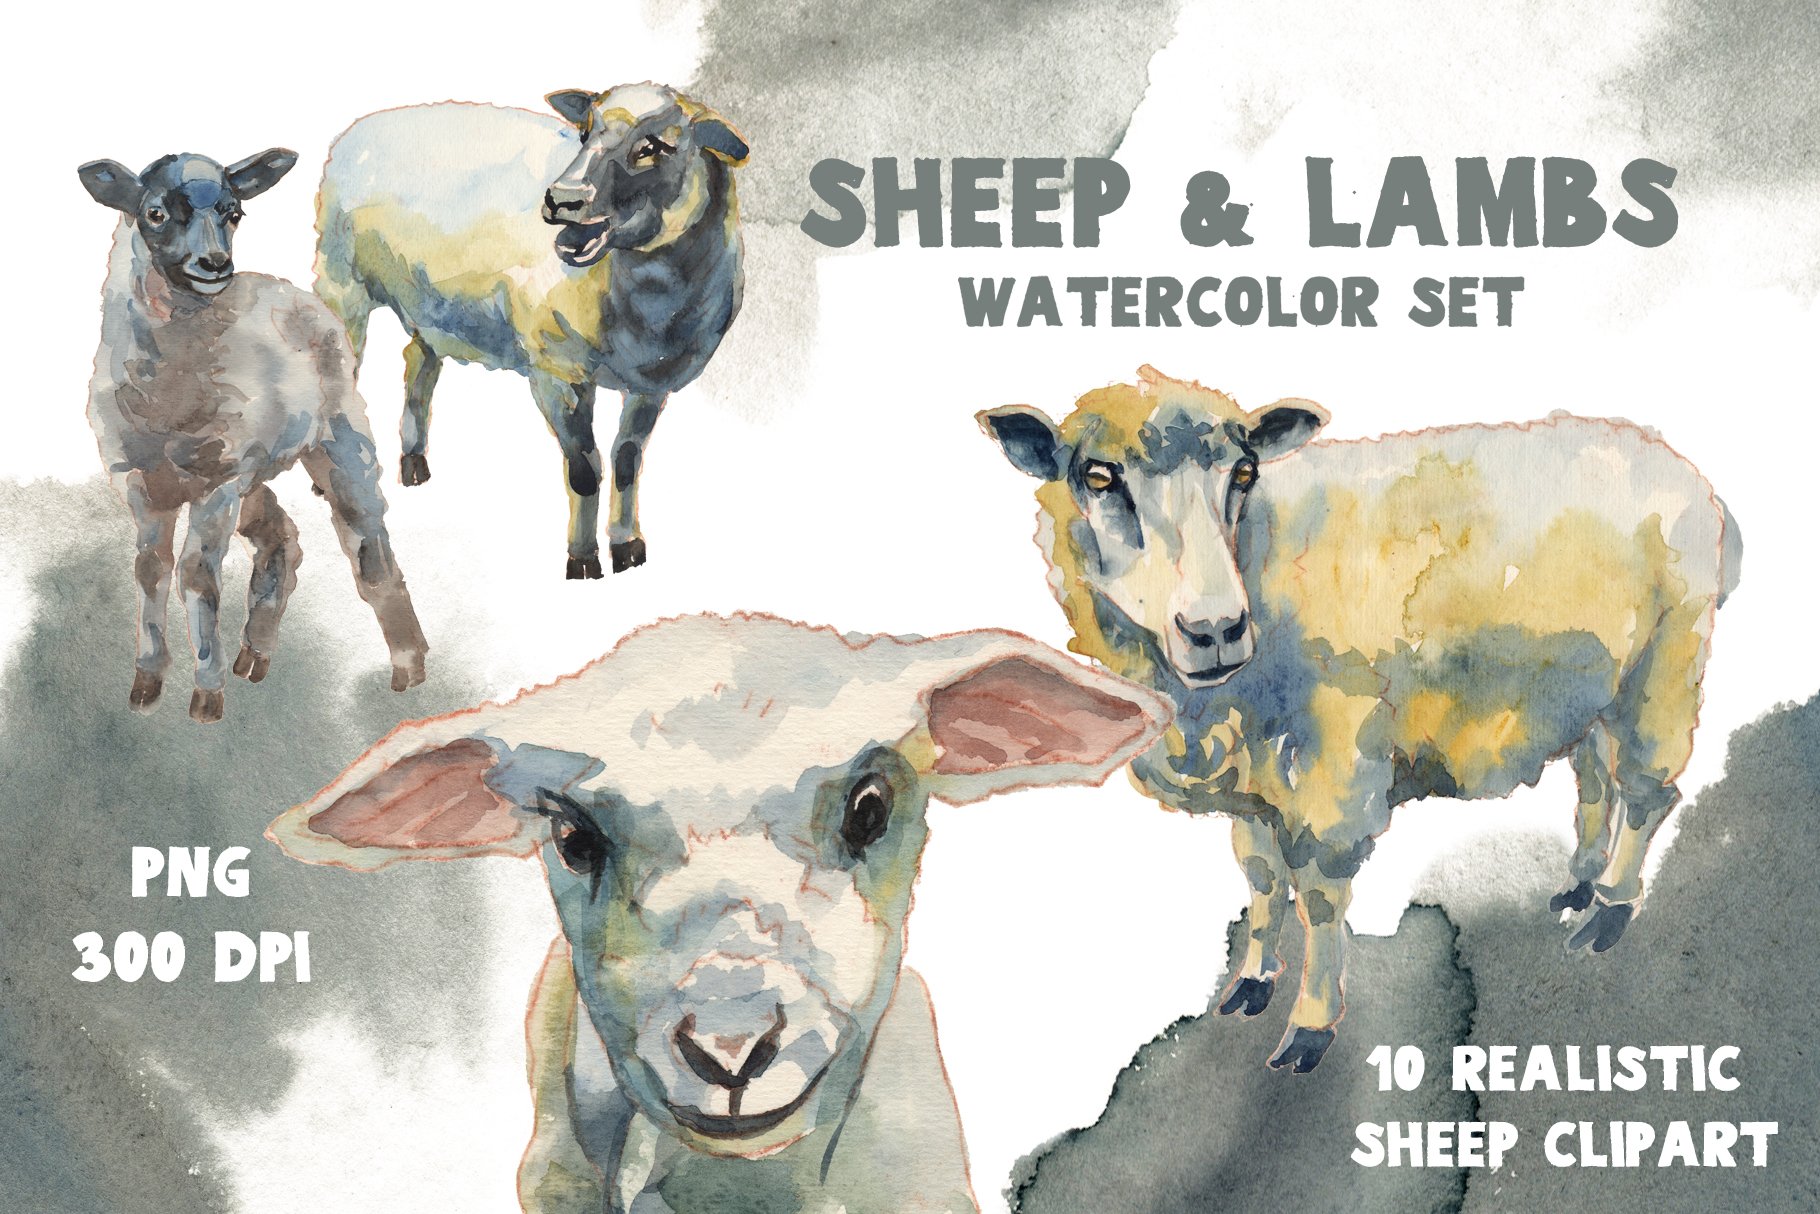 Sheep & Lambs watercolor set cover image.